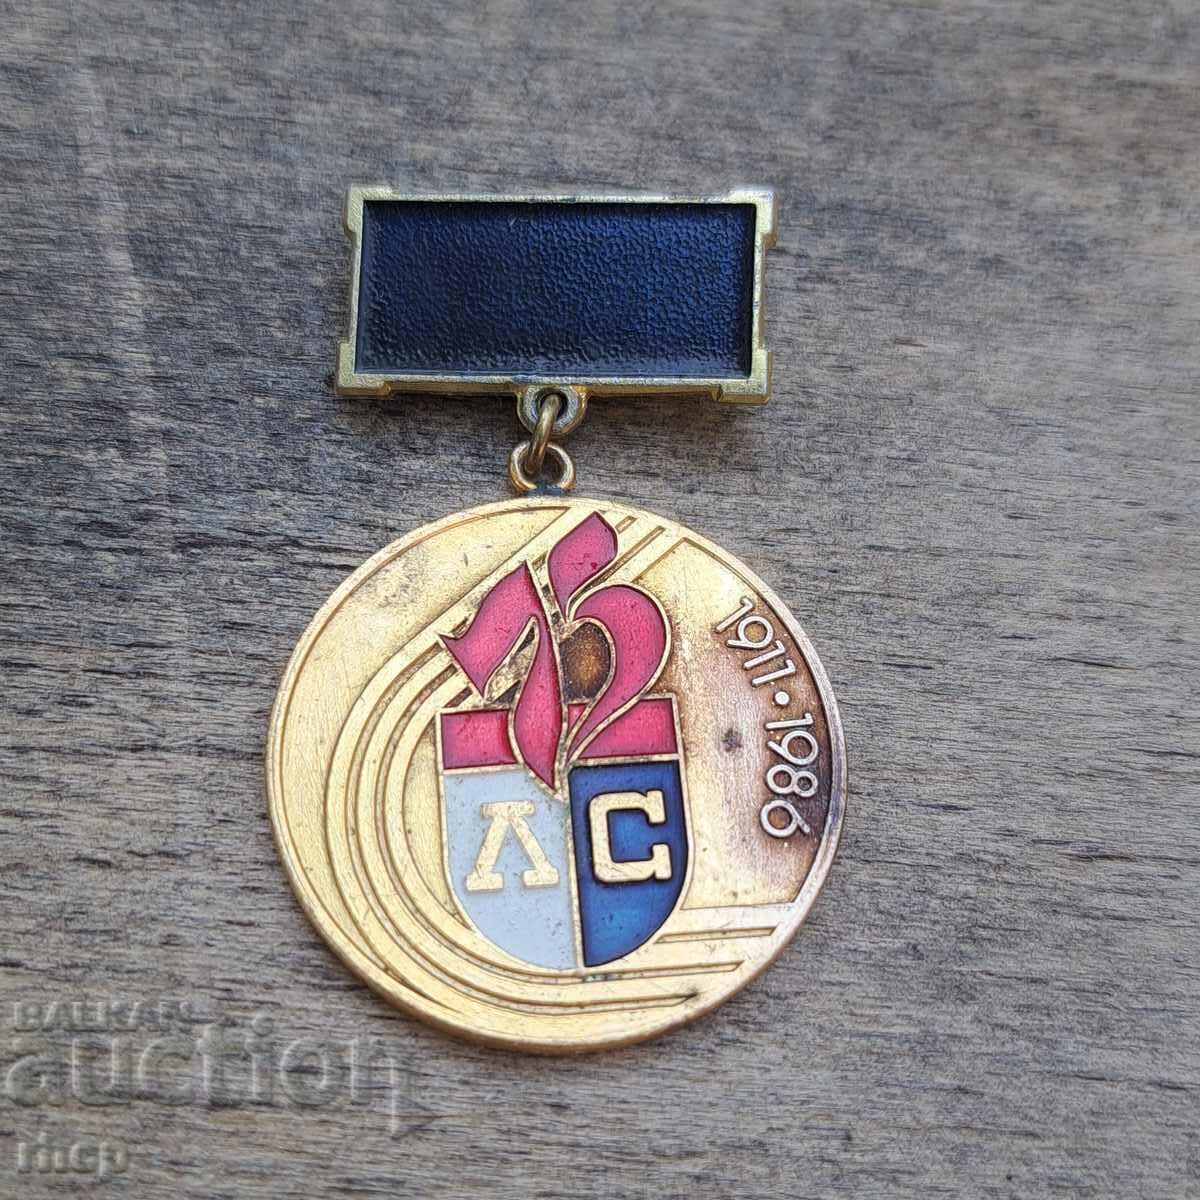 Λέφσκι Σπαρτάκ 75 χρόνια 1911-1986 υπογράψει επετειακό μετάλλιο